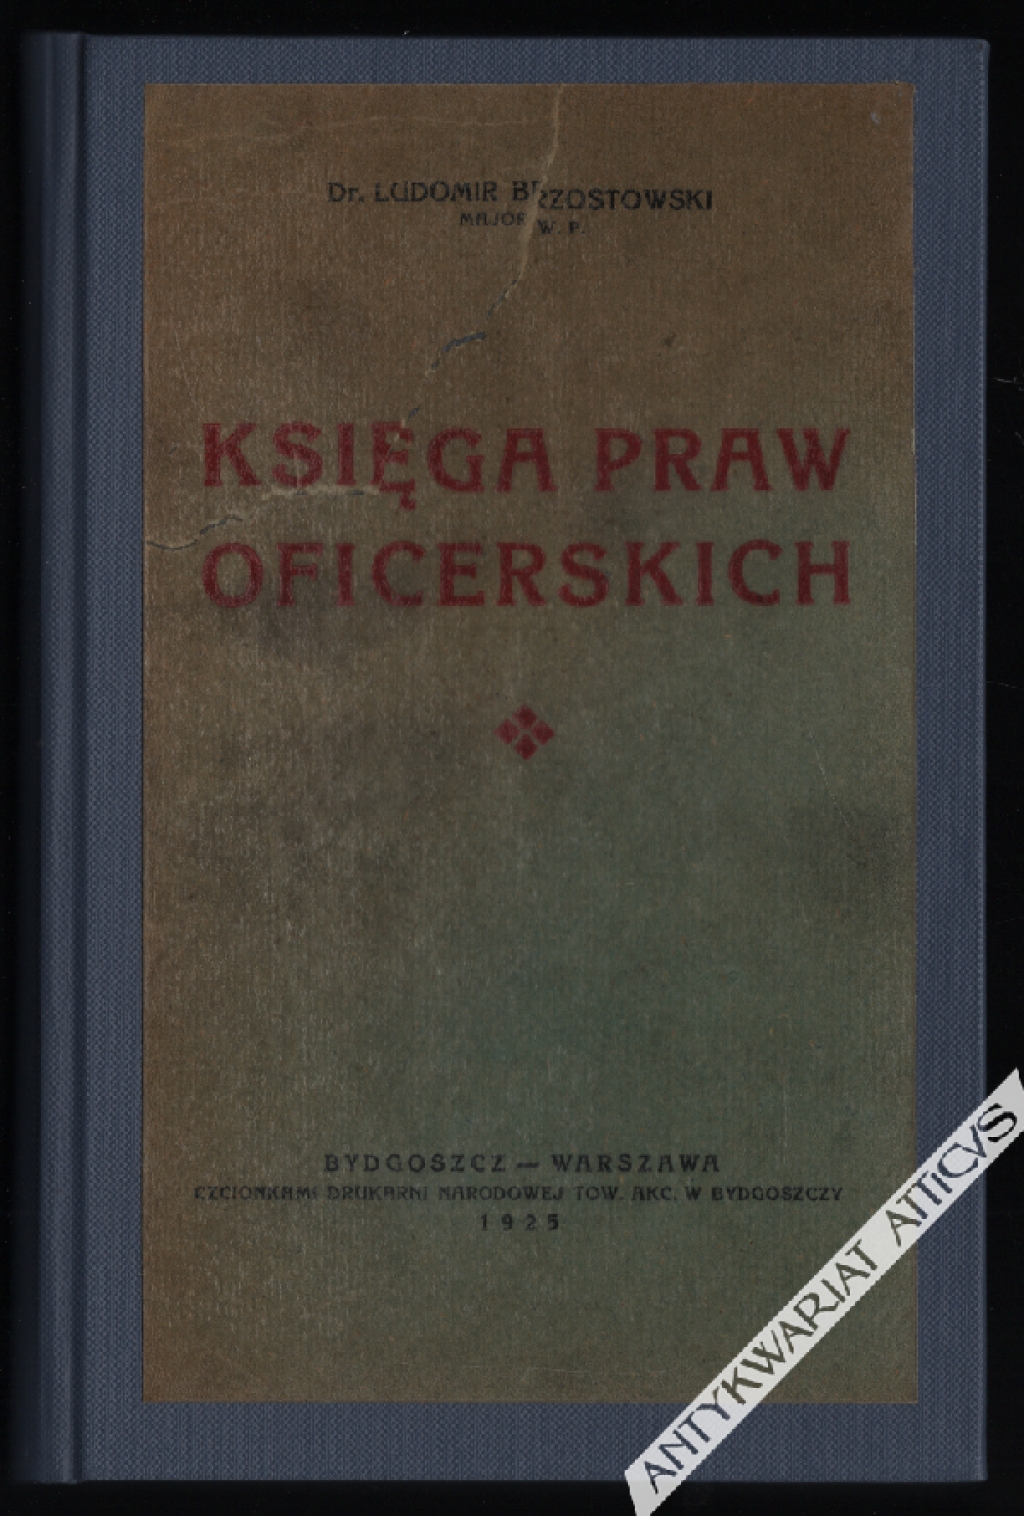 Księga praw oficerskich (Zbiór ustaw, rozporządzeń i rozkazów)